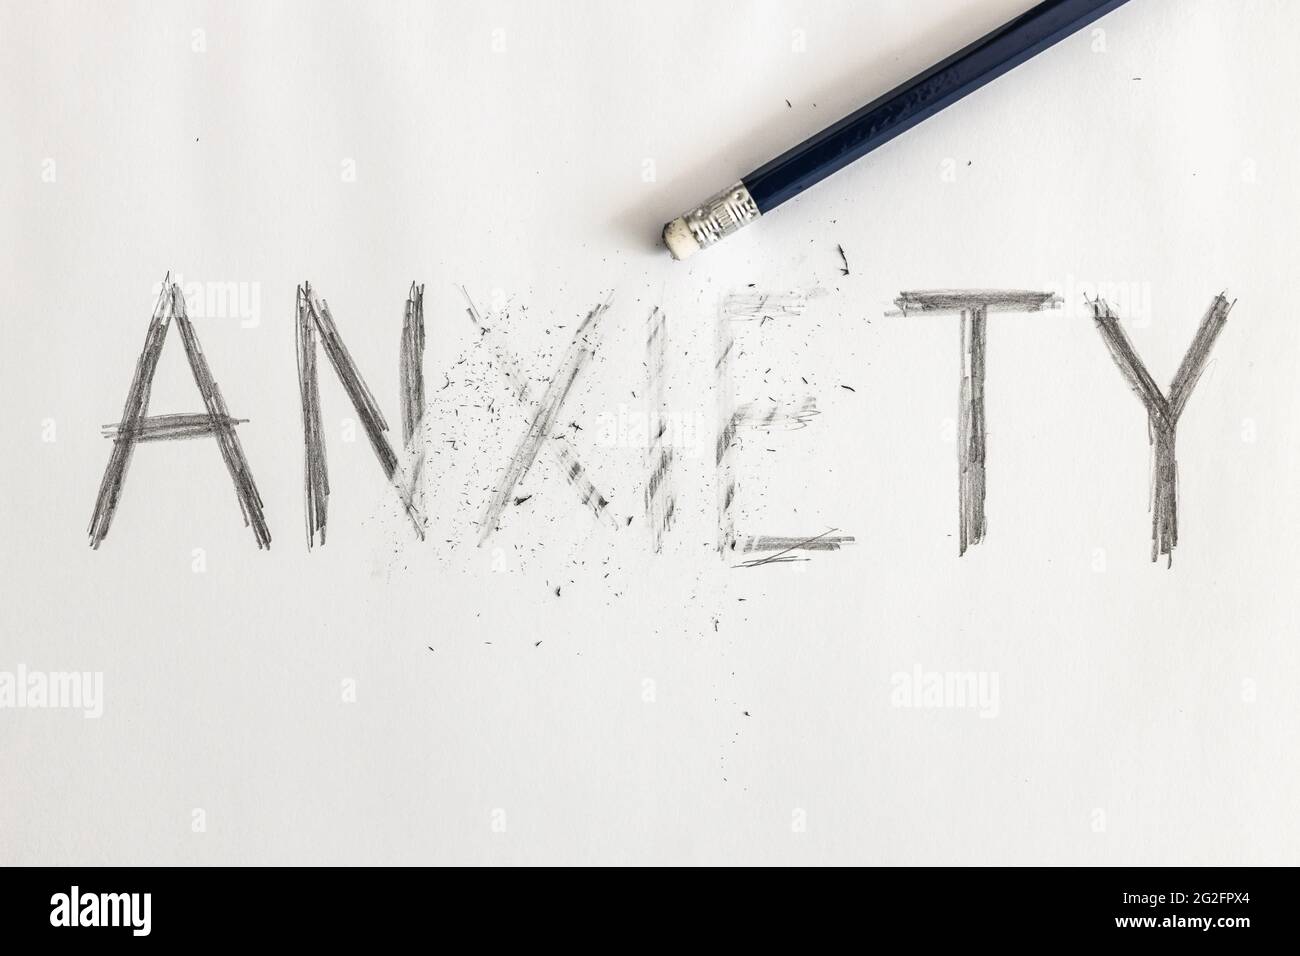 Effacer l'anxiété. Anxiété écrite sur papier blanc avec un crayon, partiellement effacée avec une gomme. Symbolique pour surmonter l'anxiété ou traiter l'anxiété. Banque D'Images